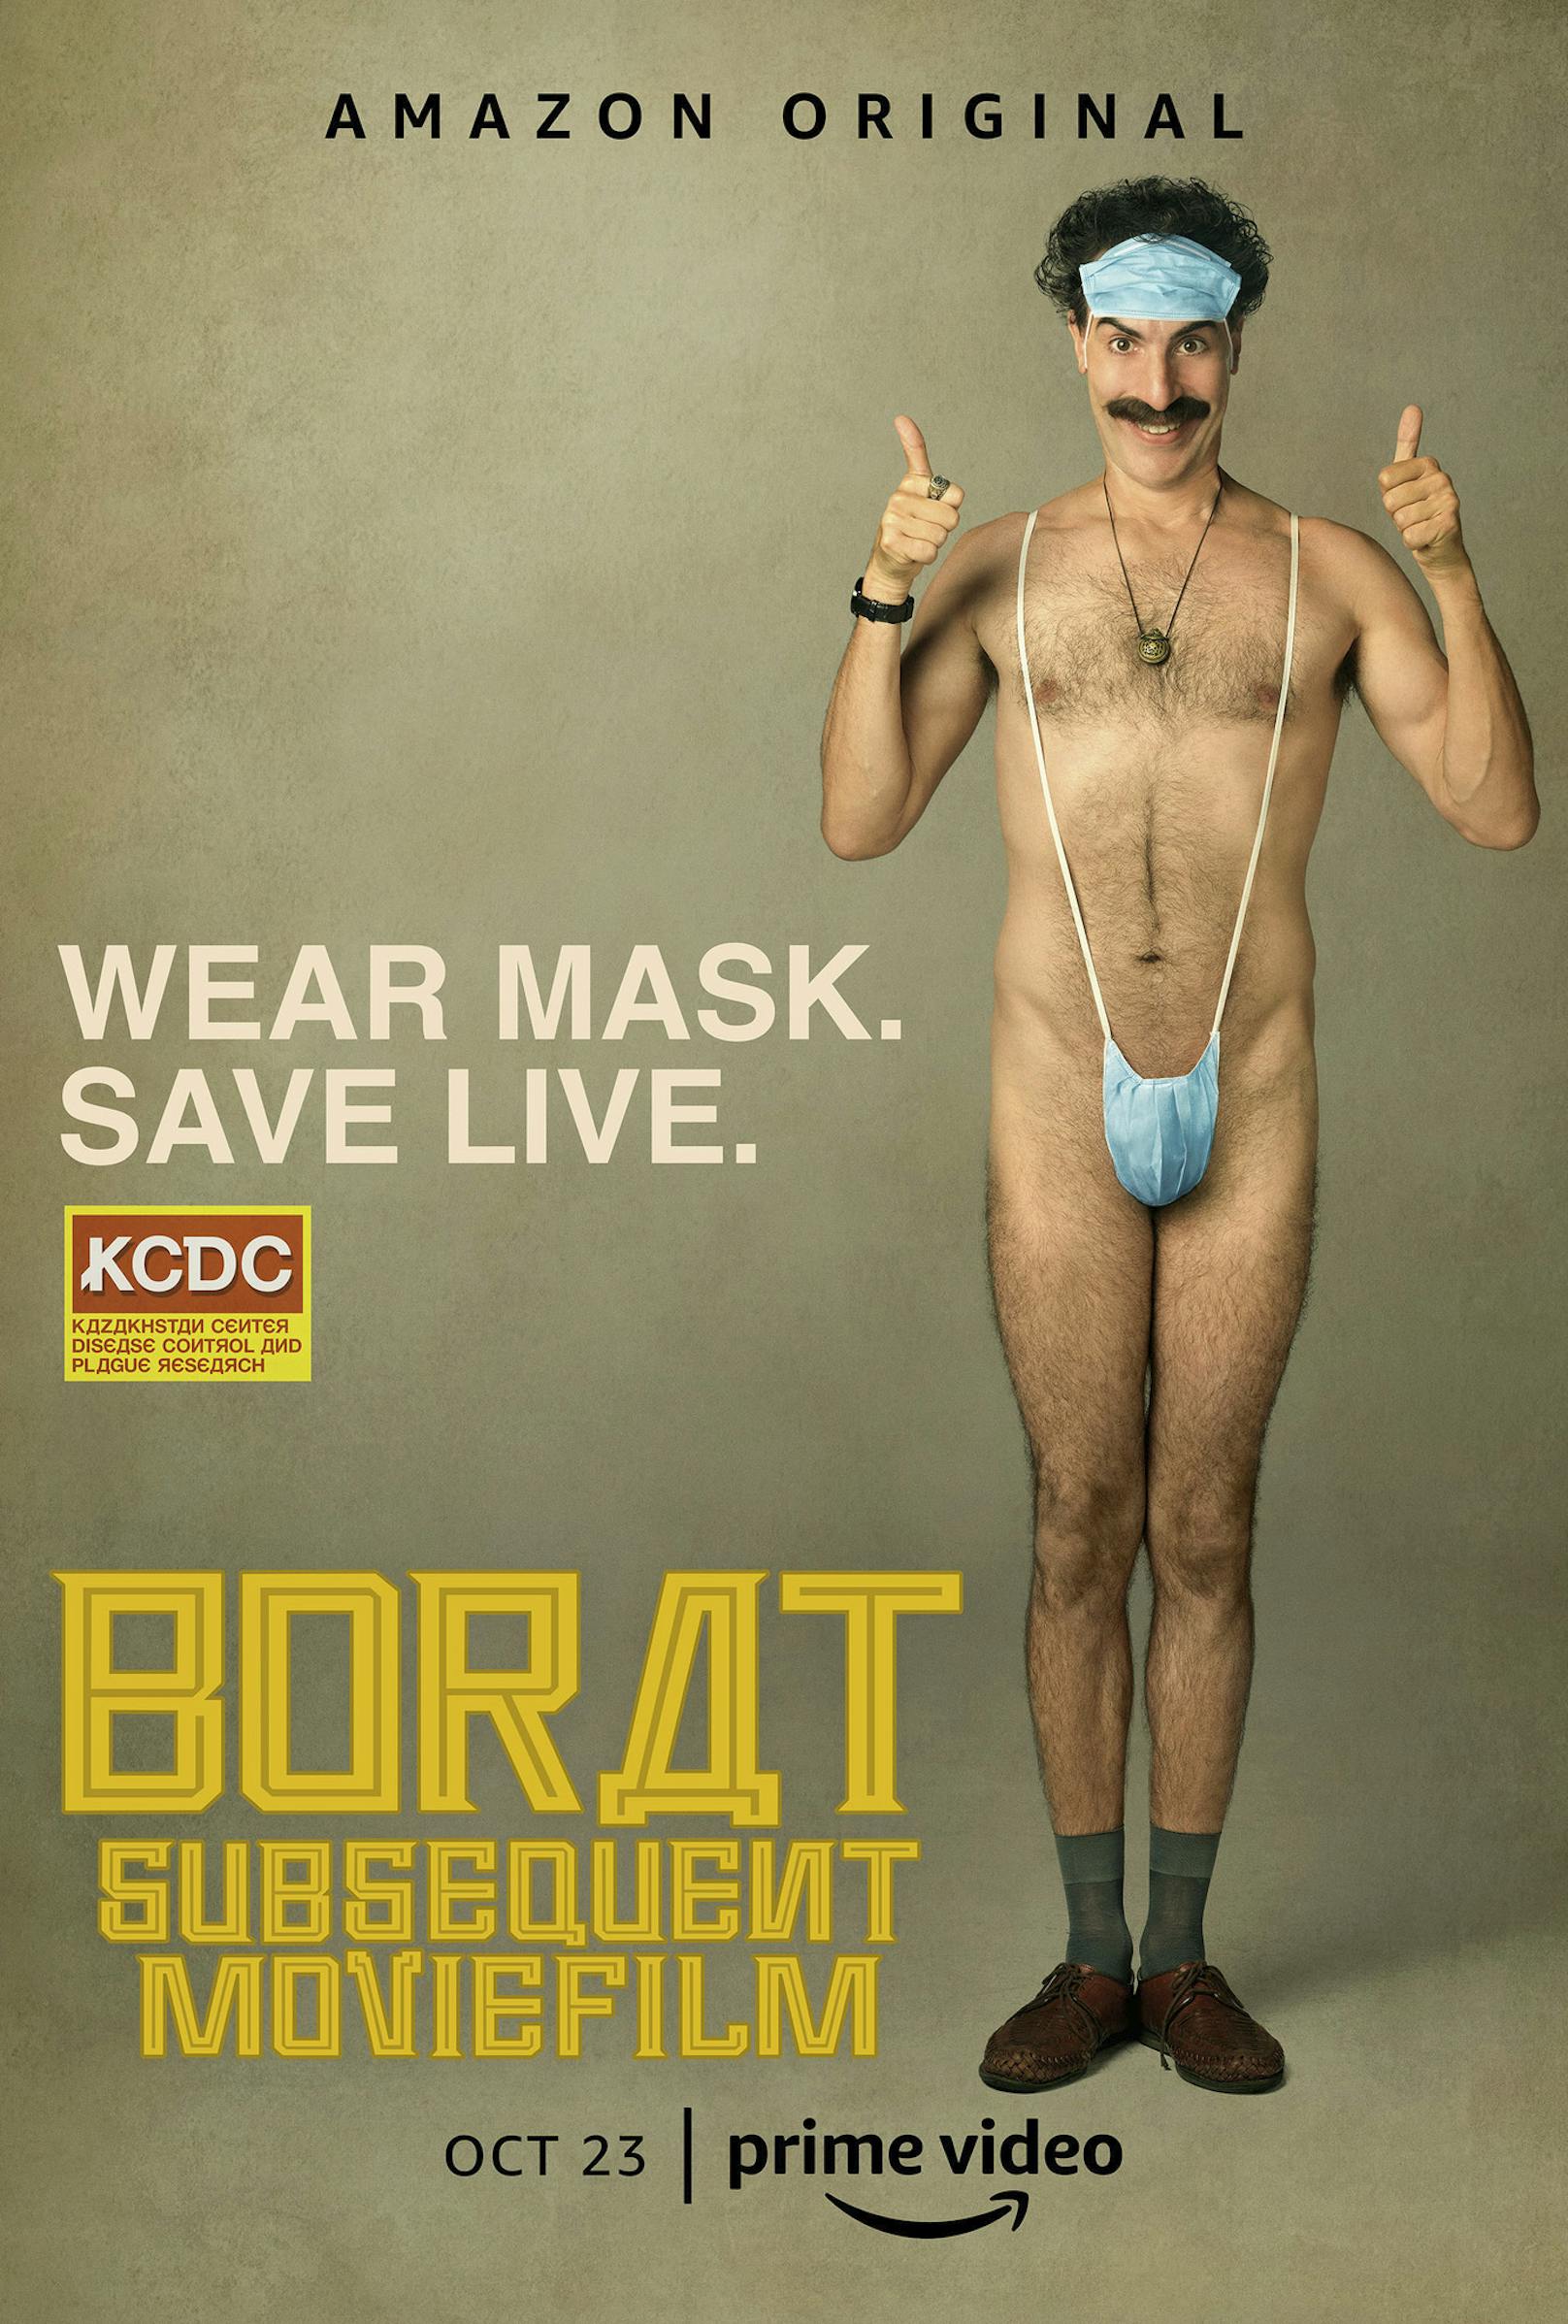 Das offizielle Filmplakat für&nbsp;"Borat Subsequent Moviefilm"